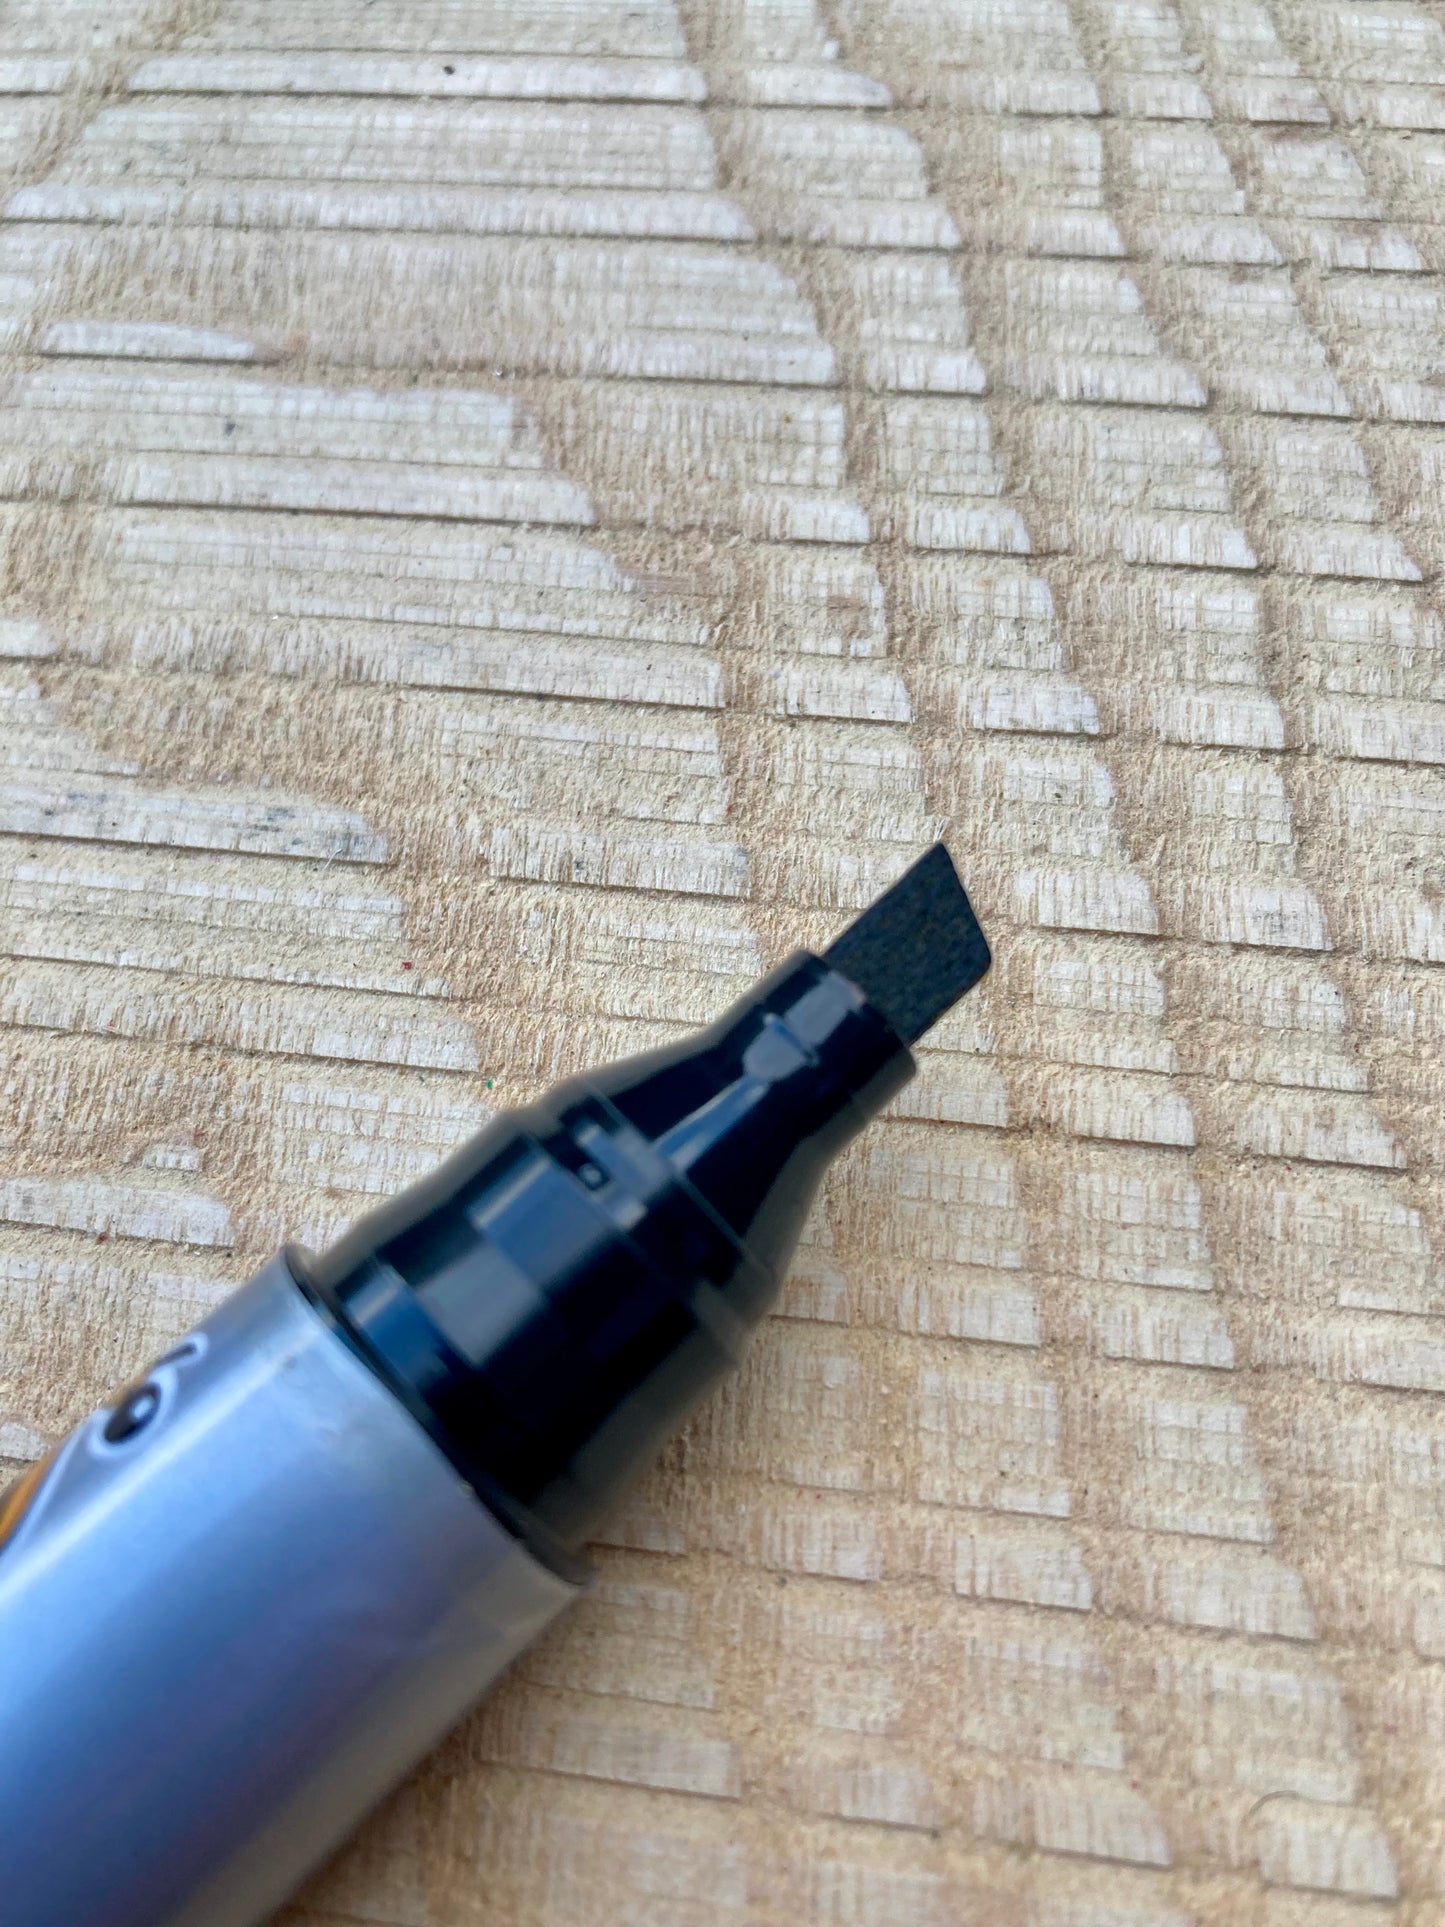 Chunky Tip Permanant Marker Pen